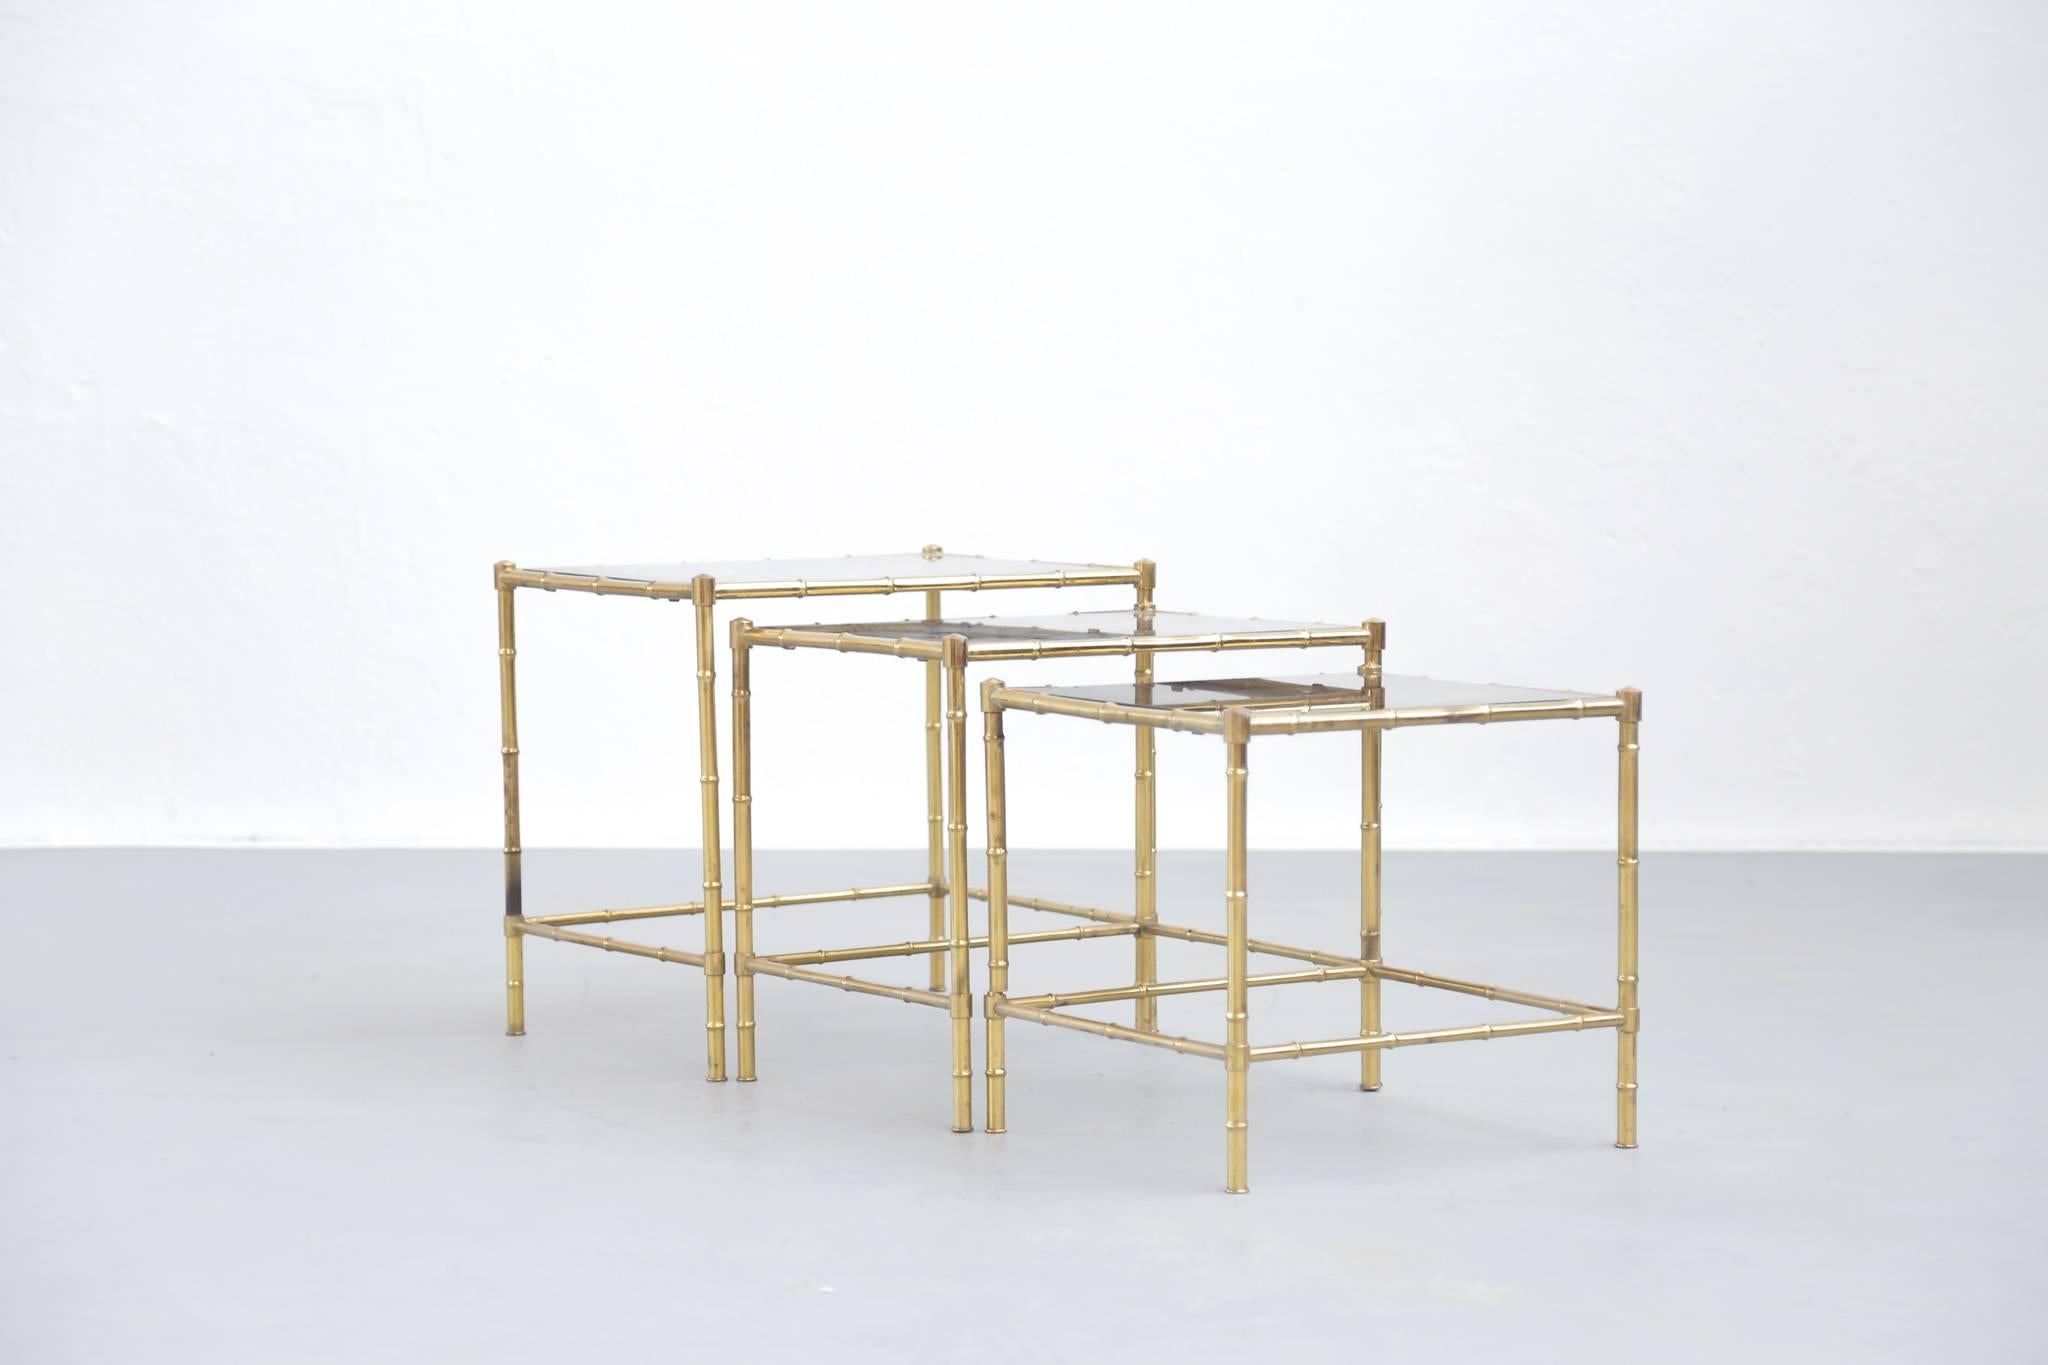 Estas clásicas y elegantes mesas nido de latón macizo están fabricadas en latón por Maison Baguès.
Estructura de bambú sintético con ruedas.